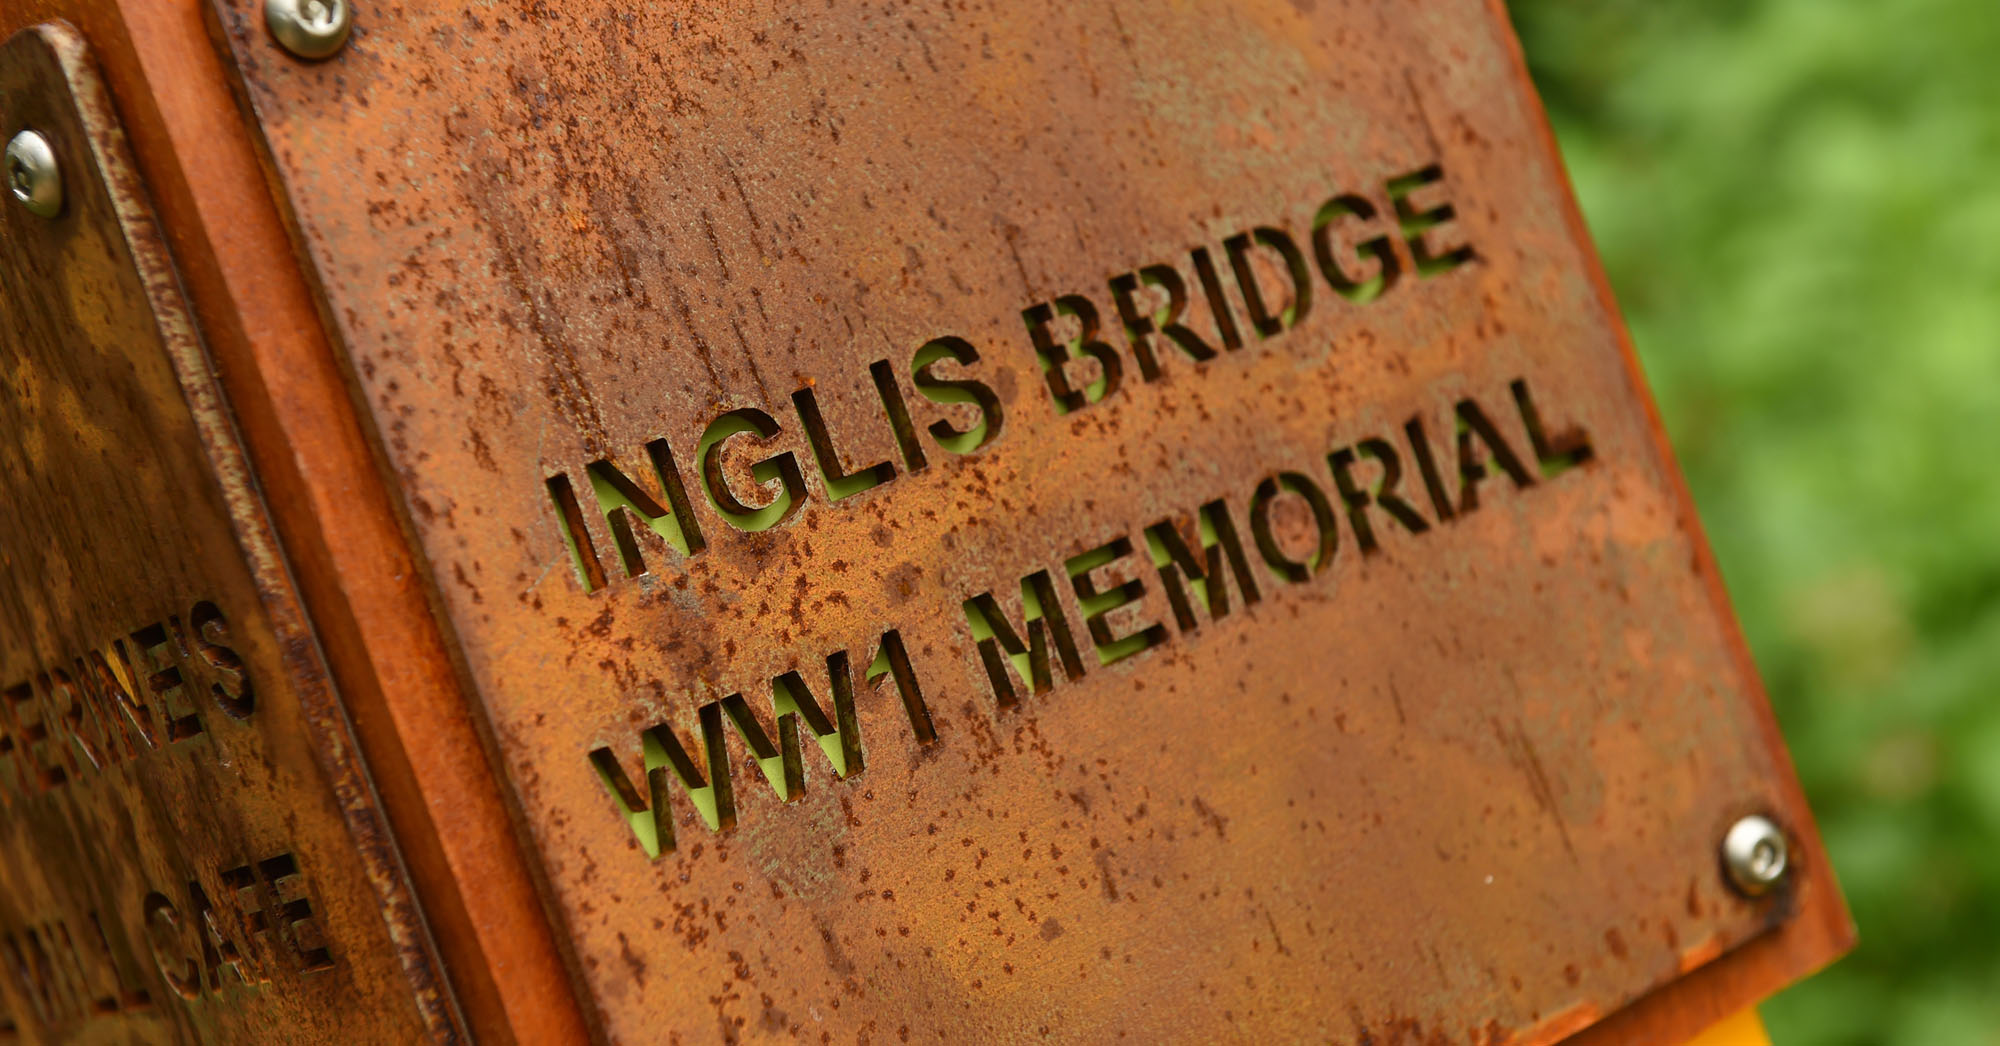 Inglis Bridge WW1 Memorial